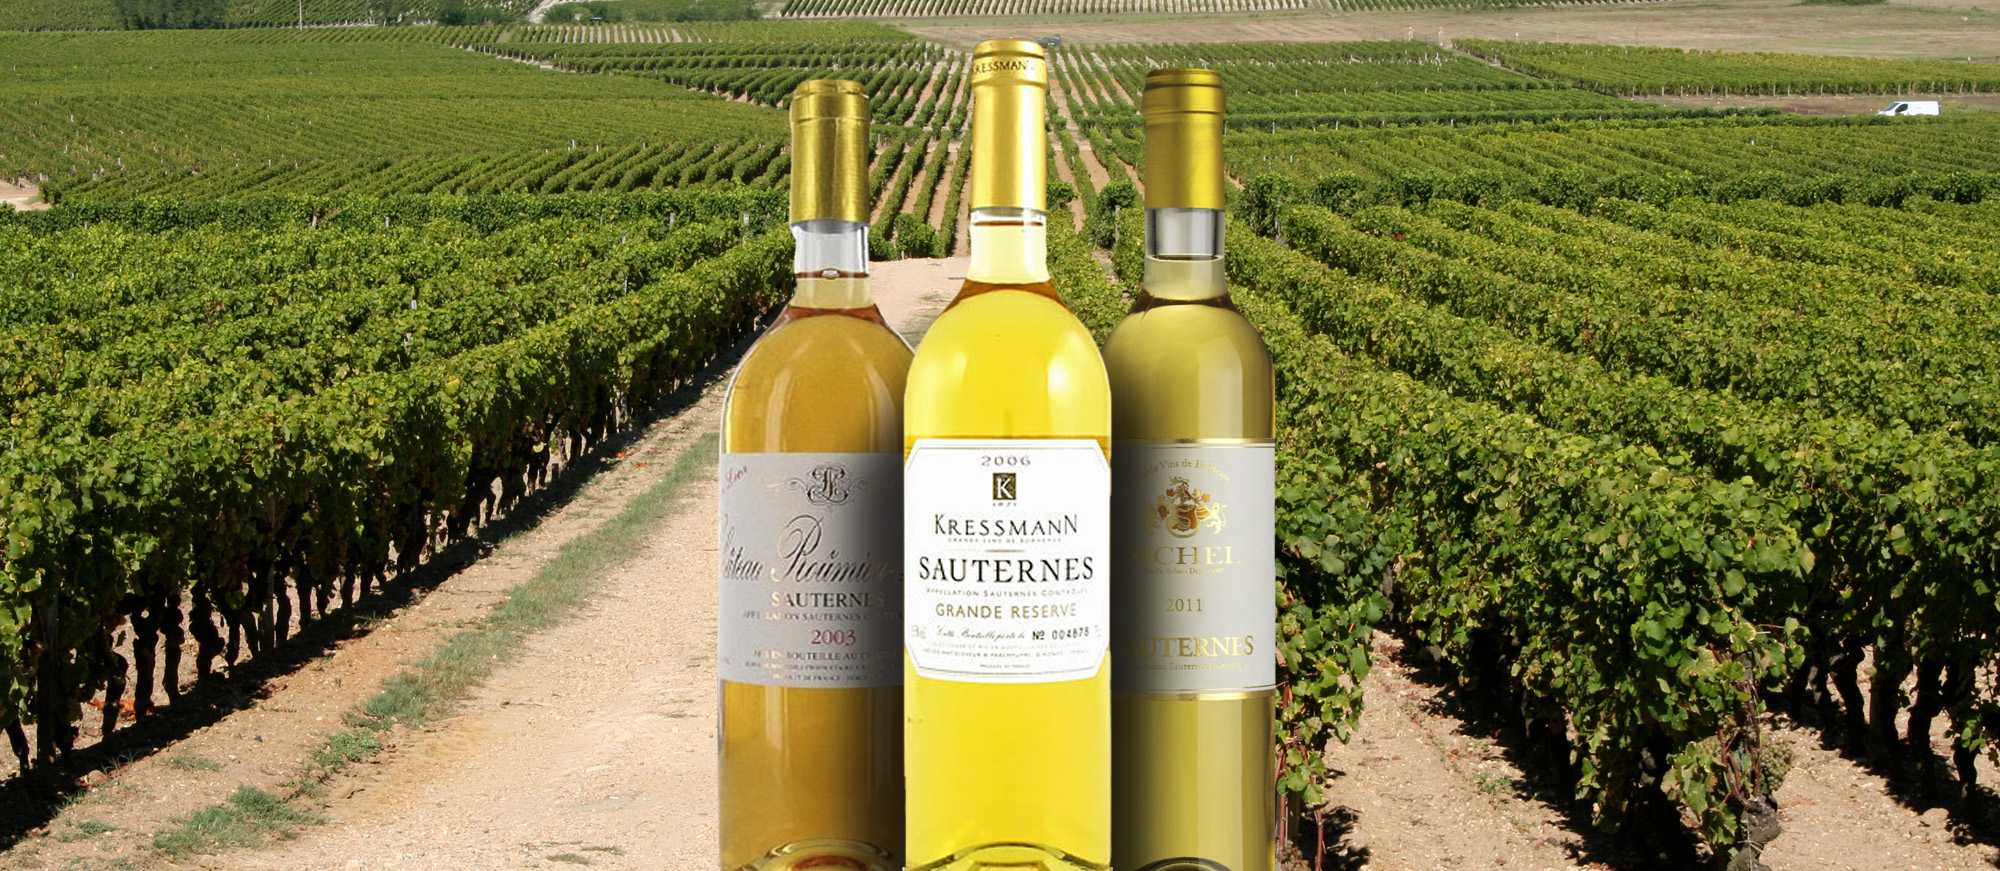 Белое сладкое вино сотерн (sauternes) из франции: как делают, с чем пить и подавать